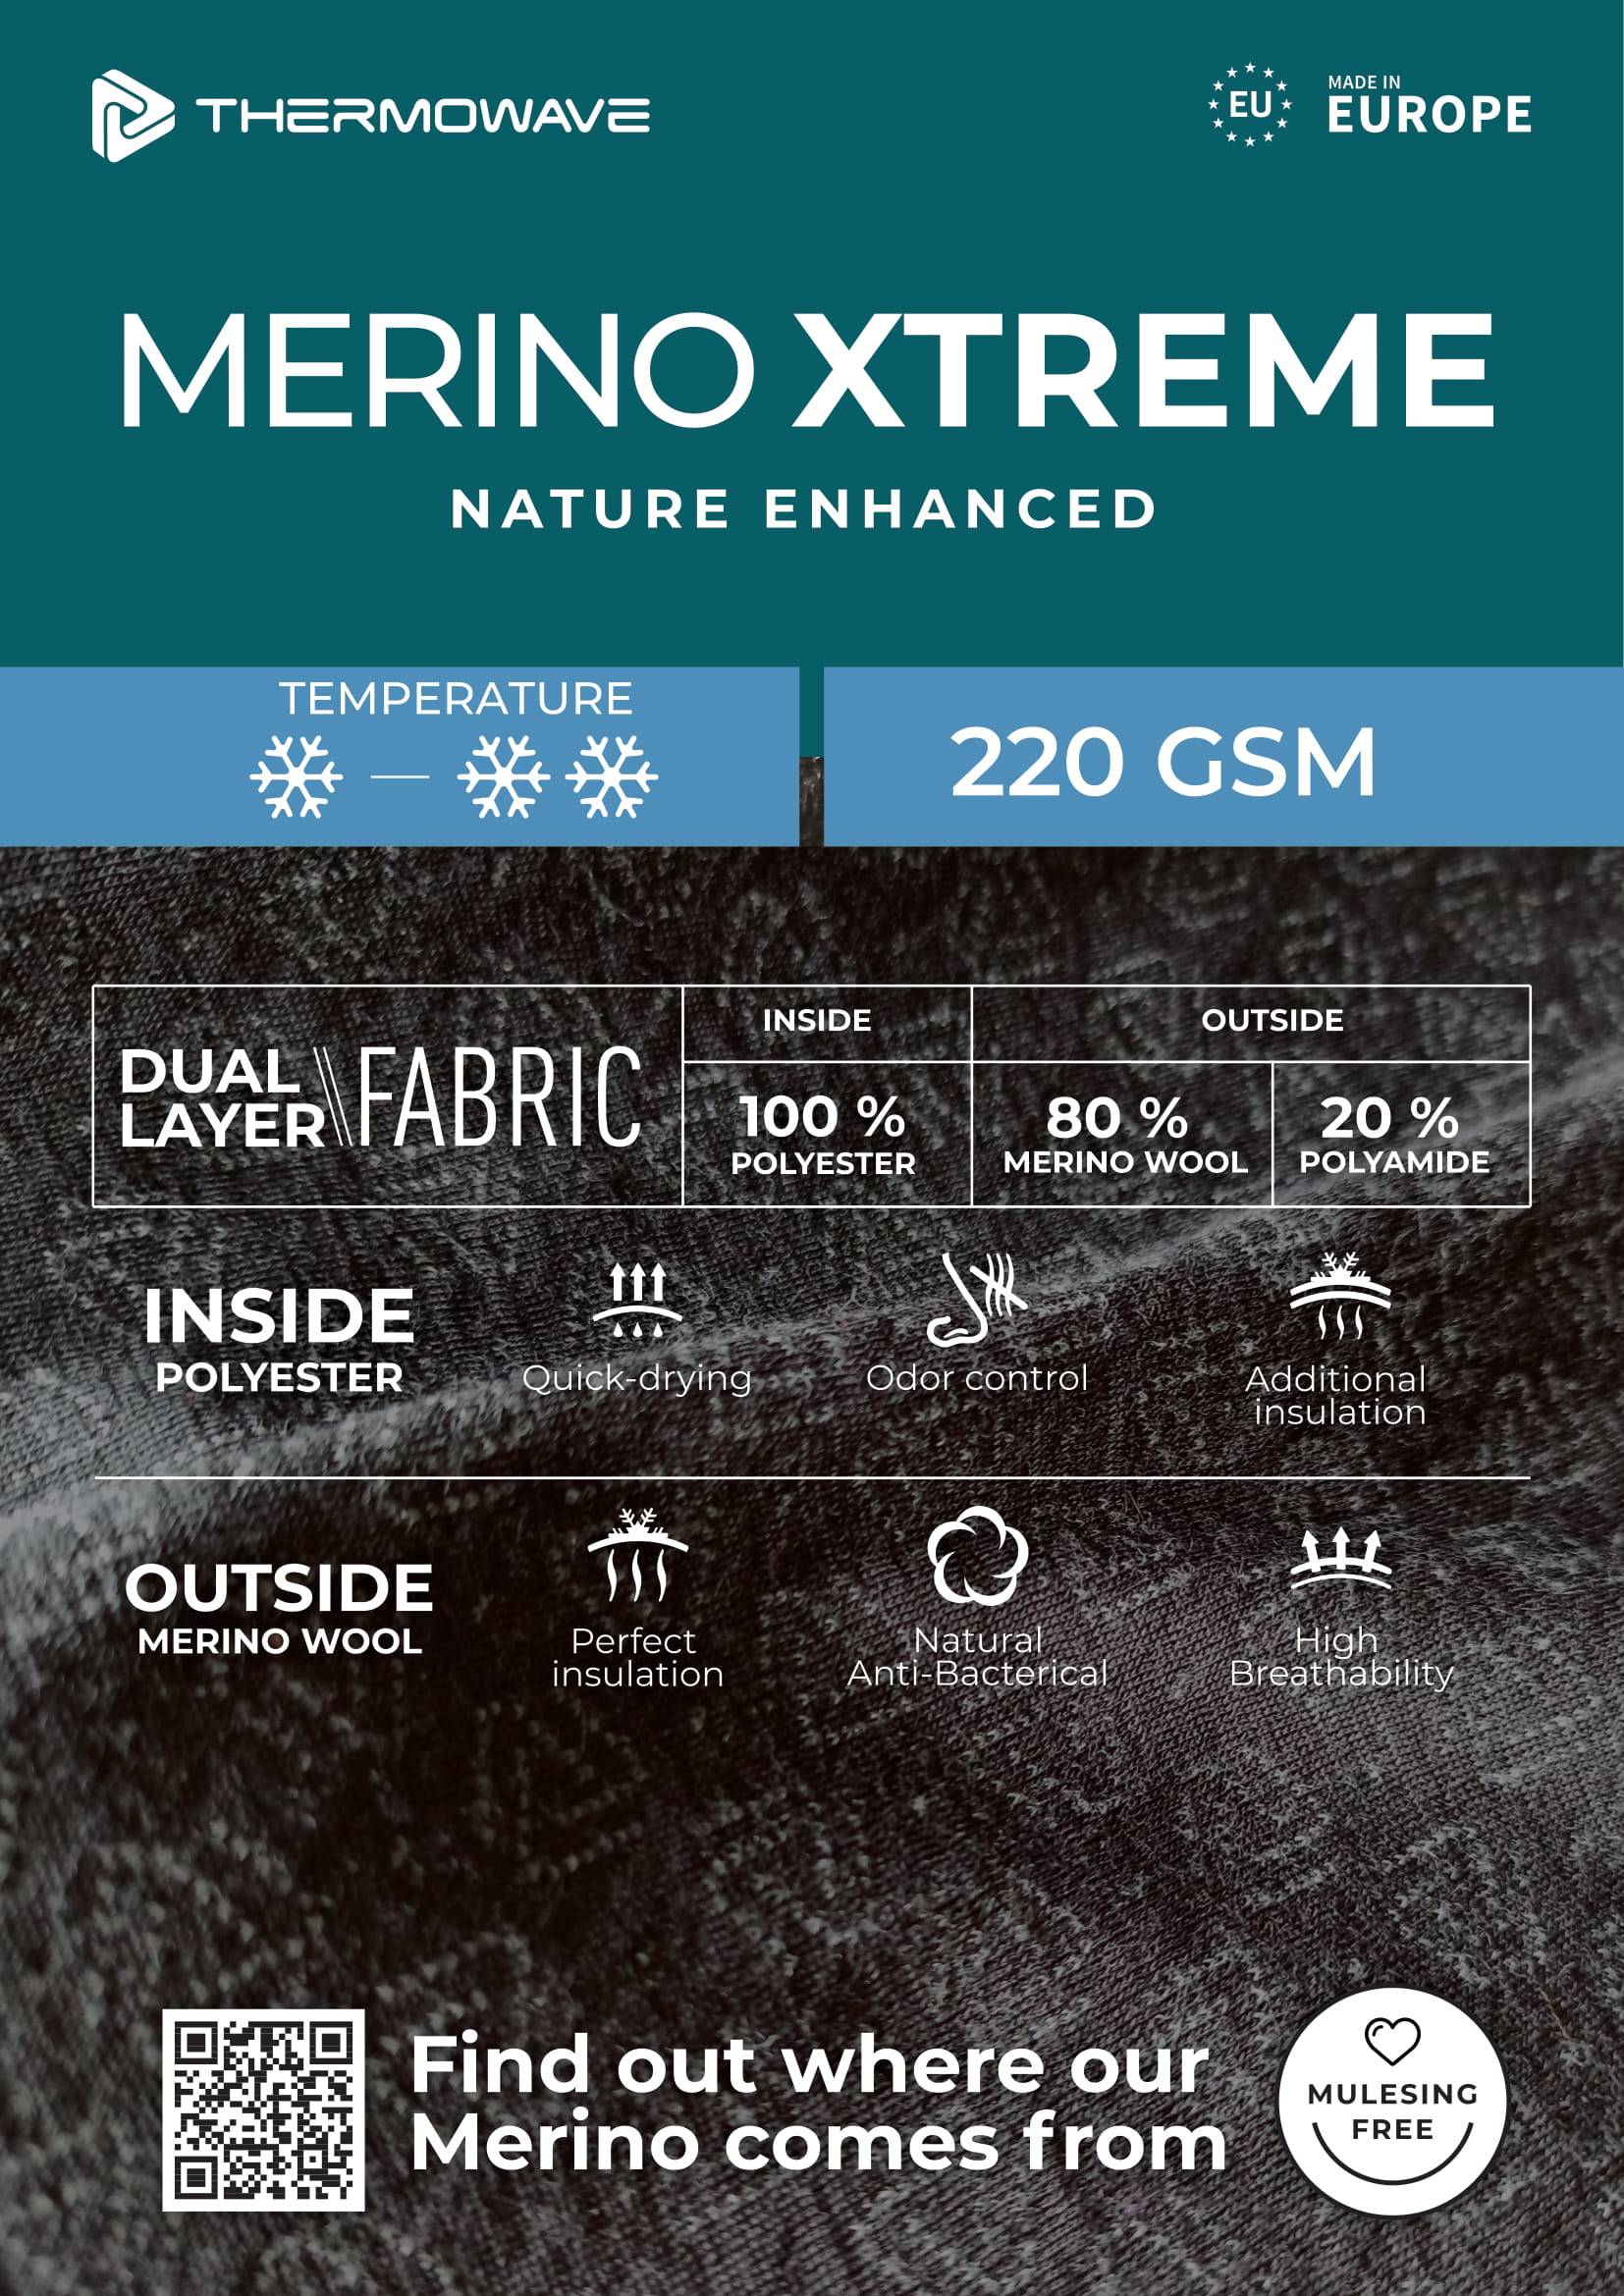 Thermowave Merino XTREME